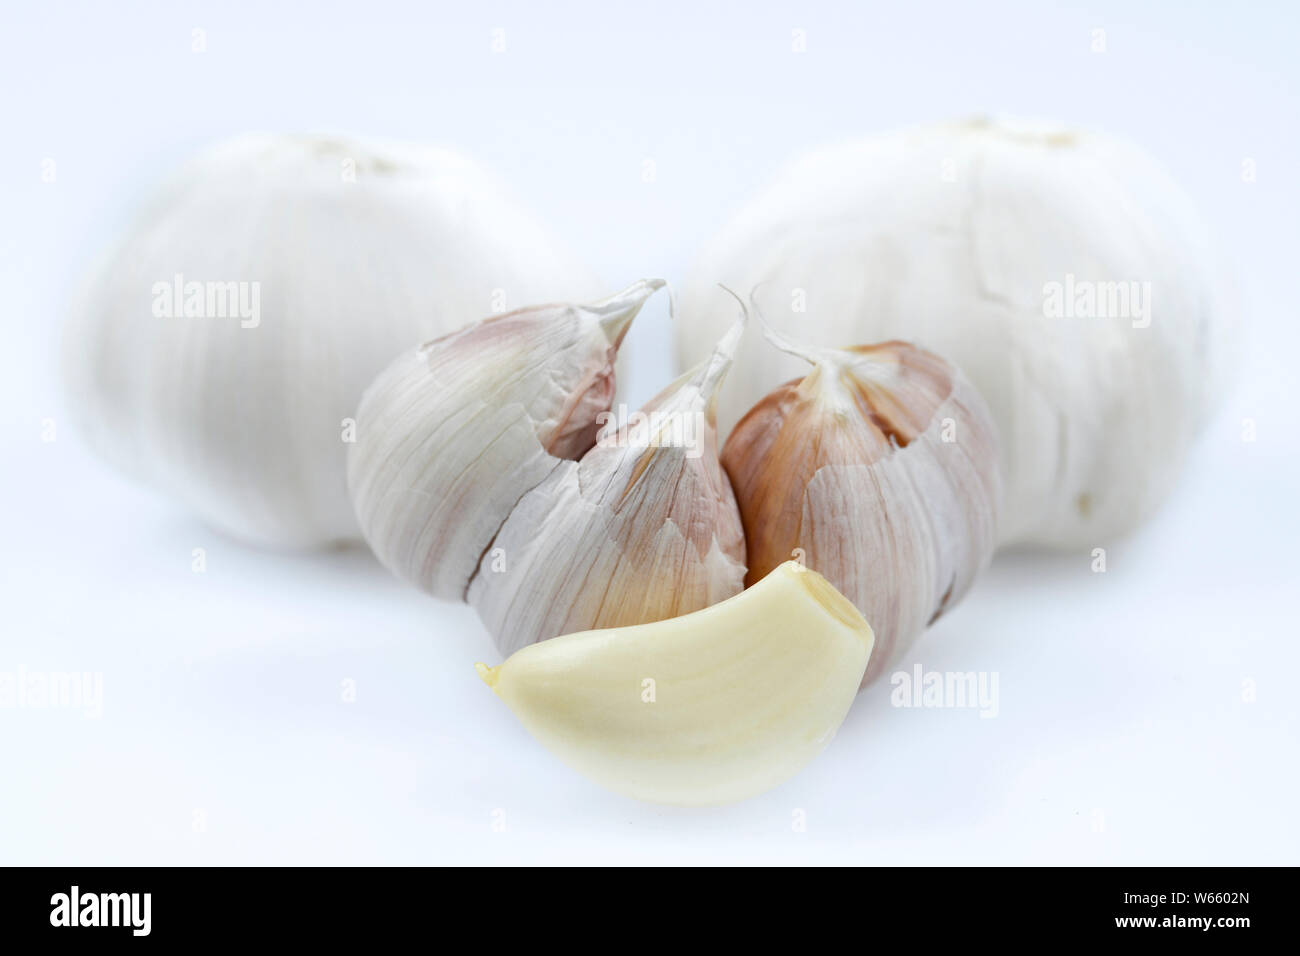 garlic, Allium sativum Stock Photo